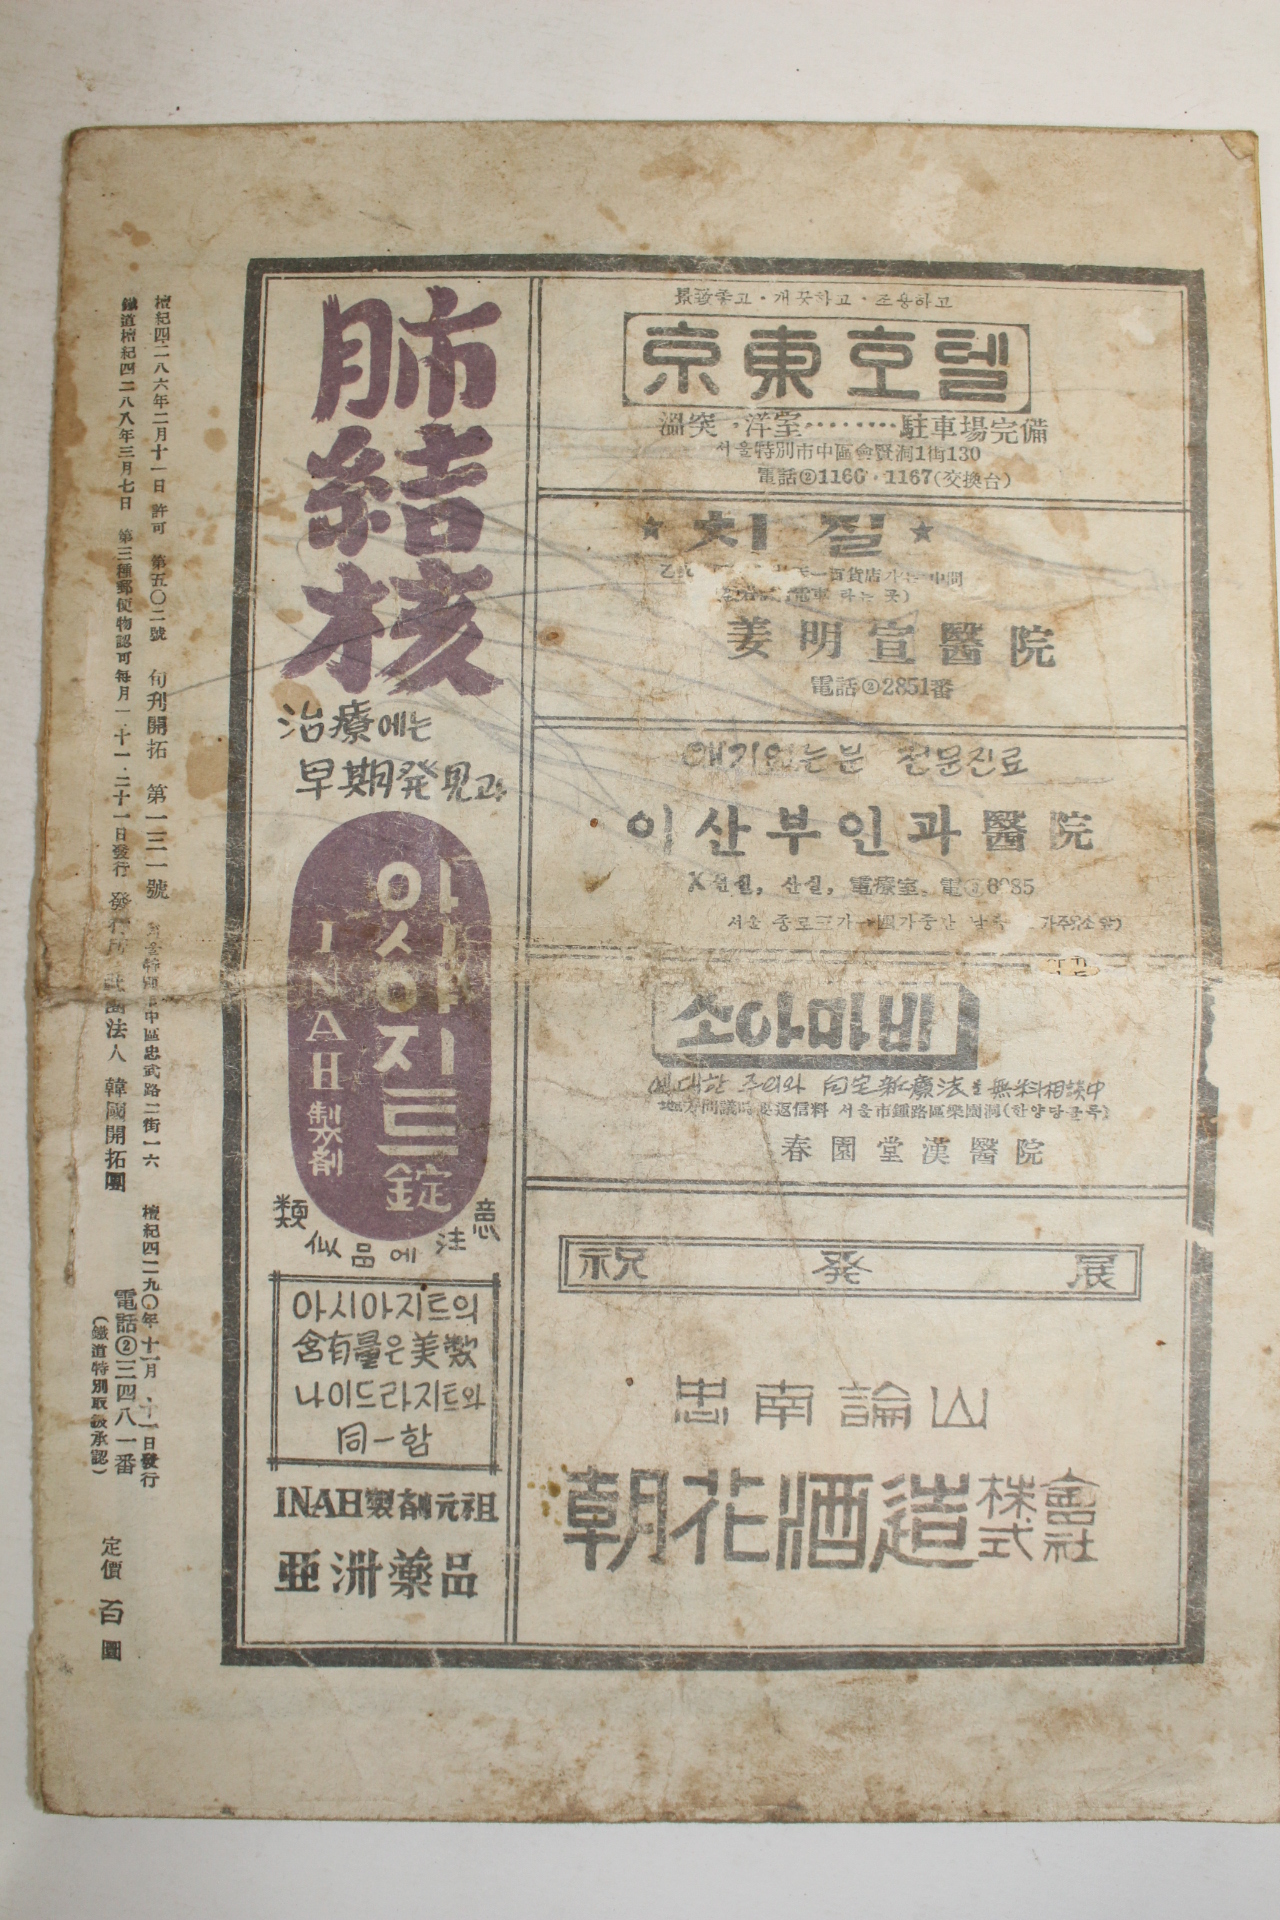 1957년 순간개척(旬刊開拓) 11월11일